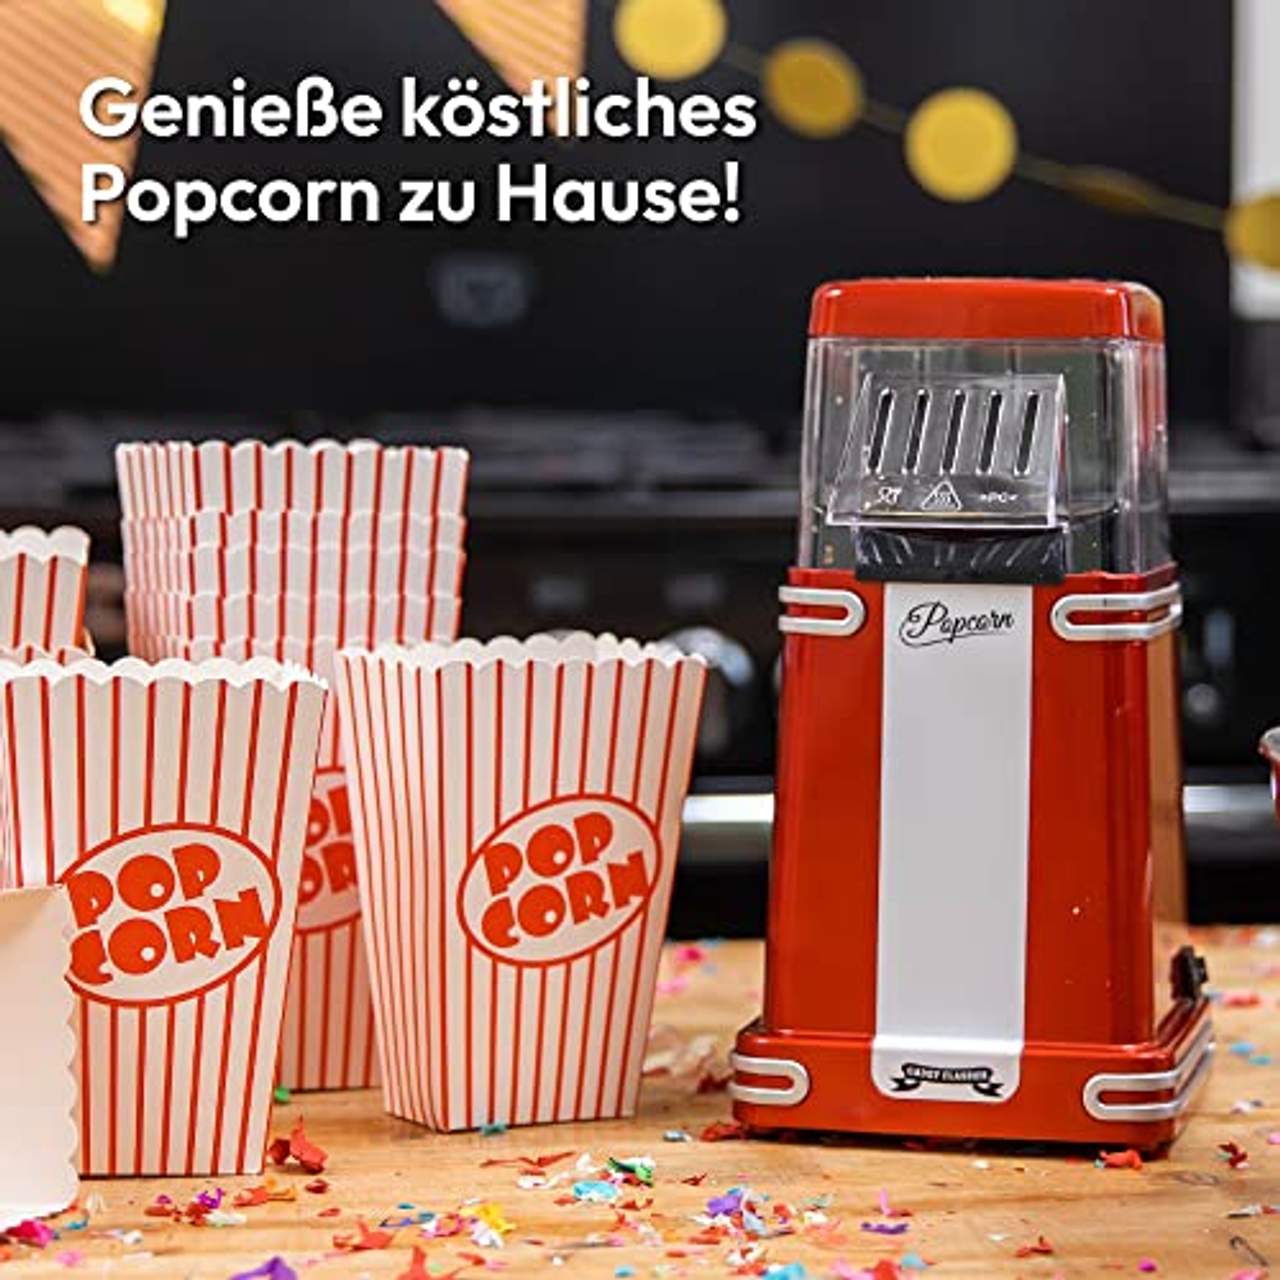 Gadgy Popcornmaschine Heissluft Retro Popcorn Maker